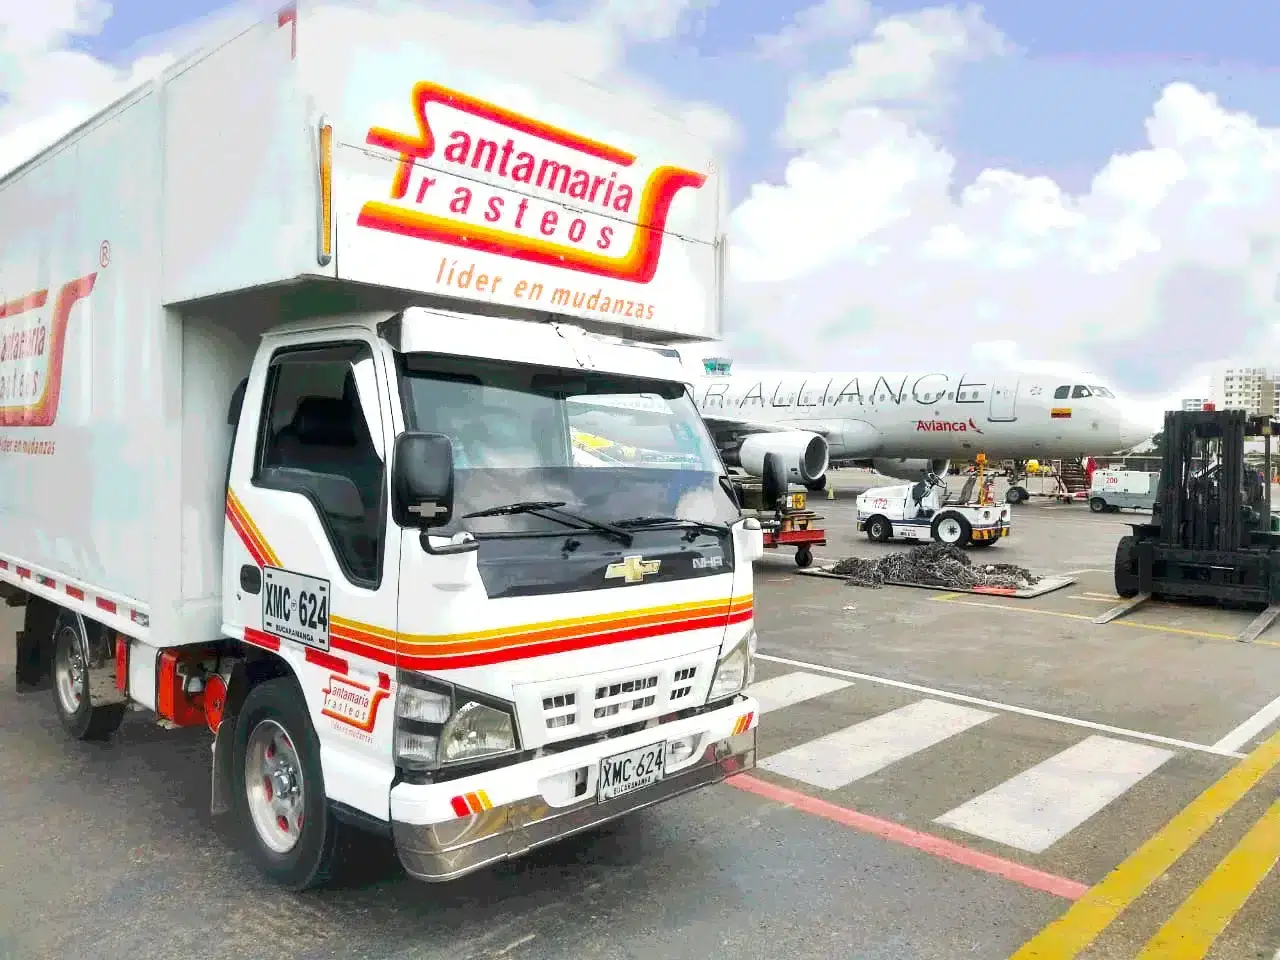 camion de SantaMaria trasteos, empresa de mudanzas y trasteos a nivel nacional e internacional